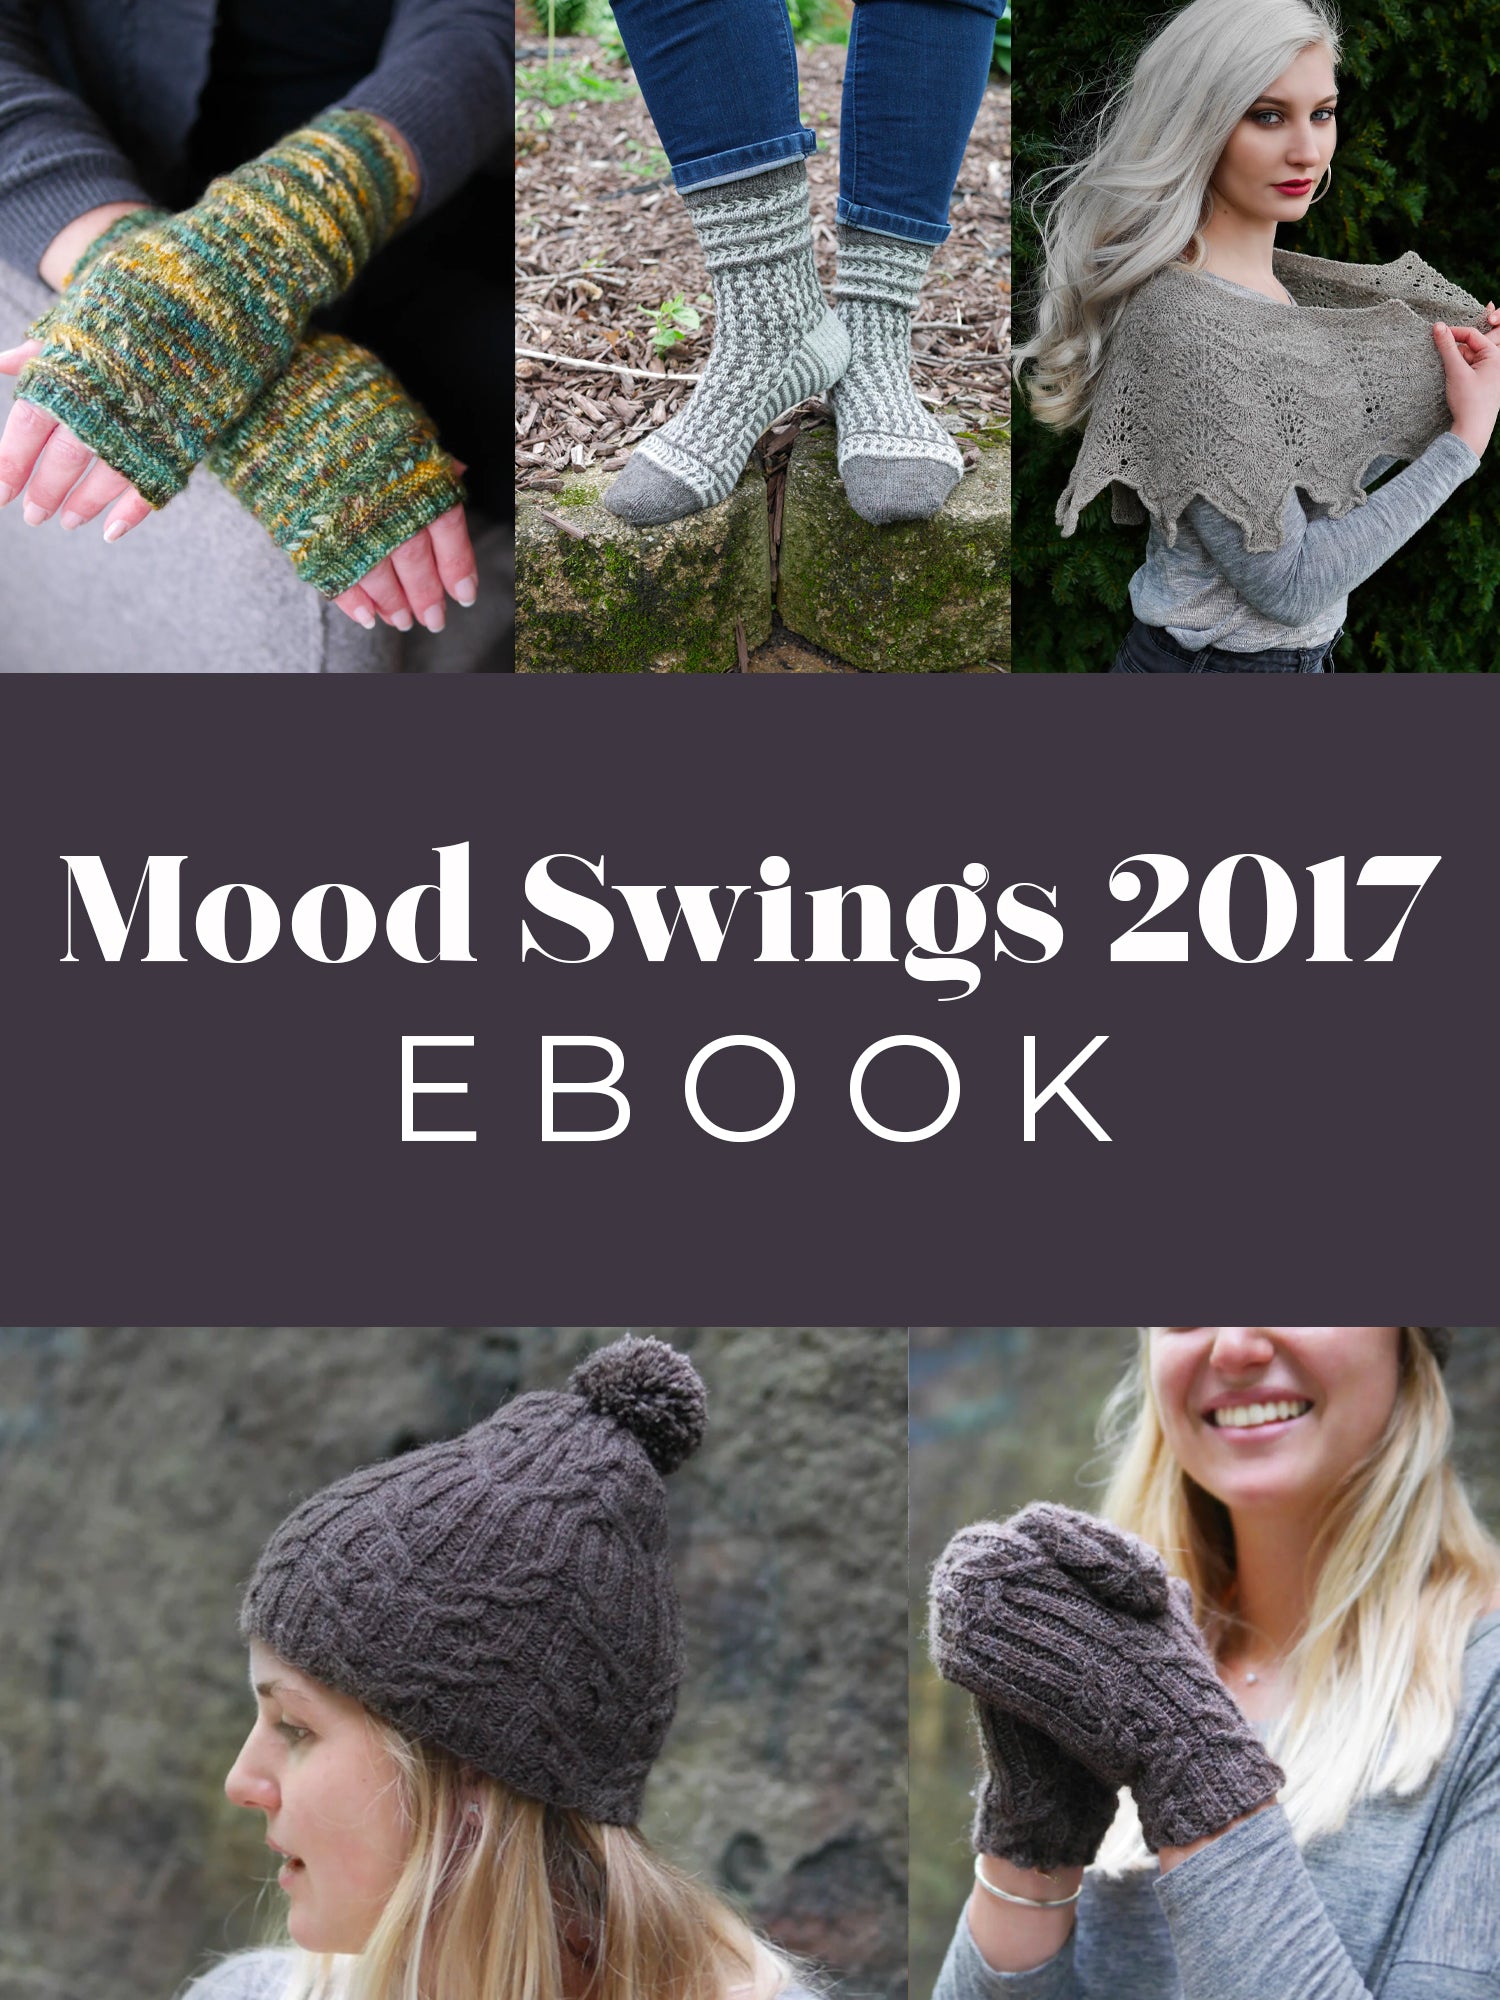 Mood Swings 2017 ebook